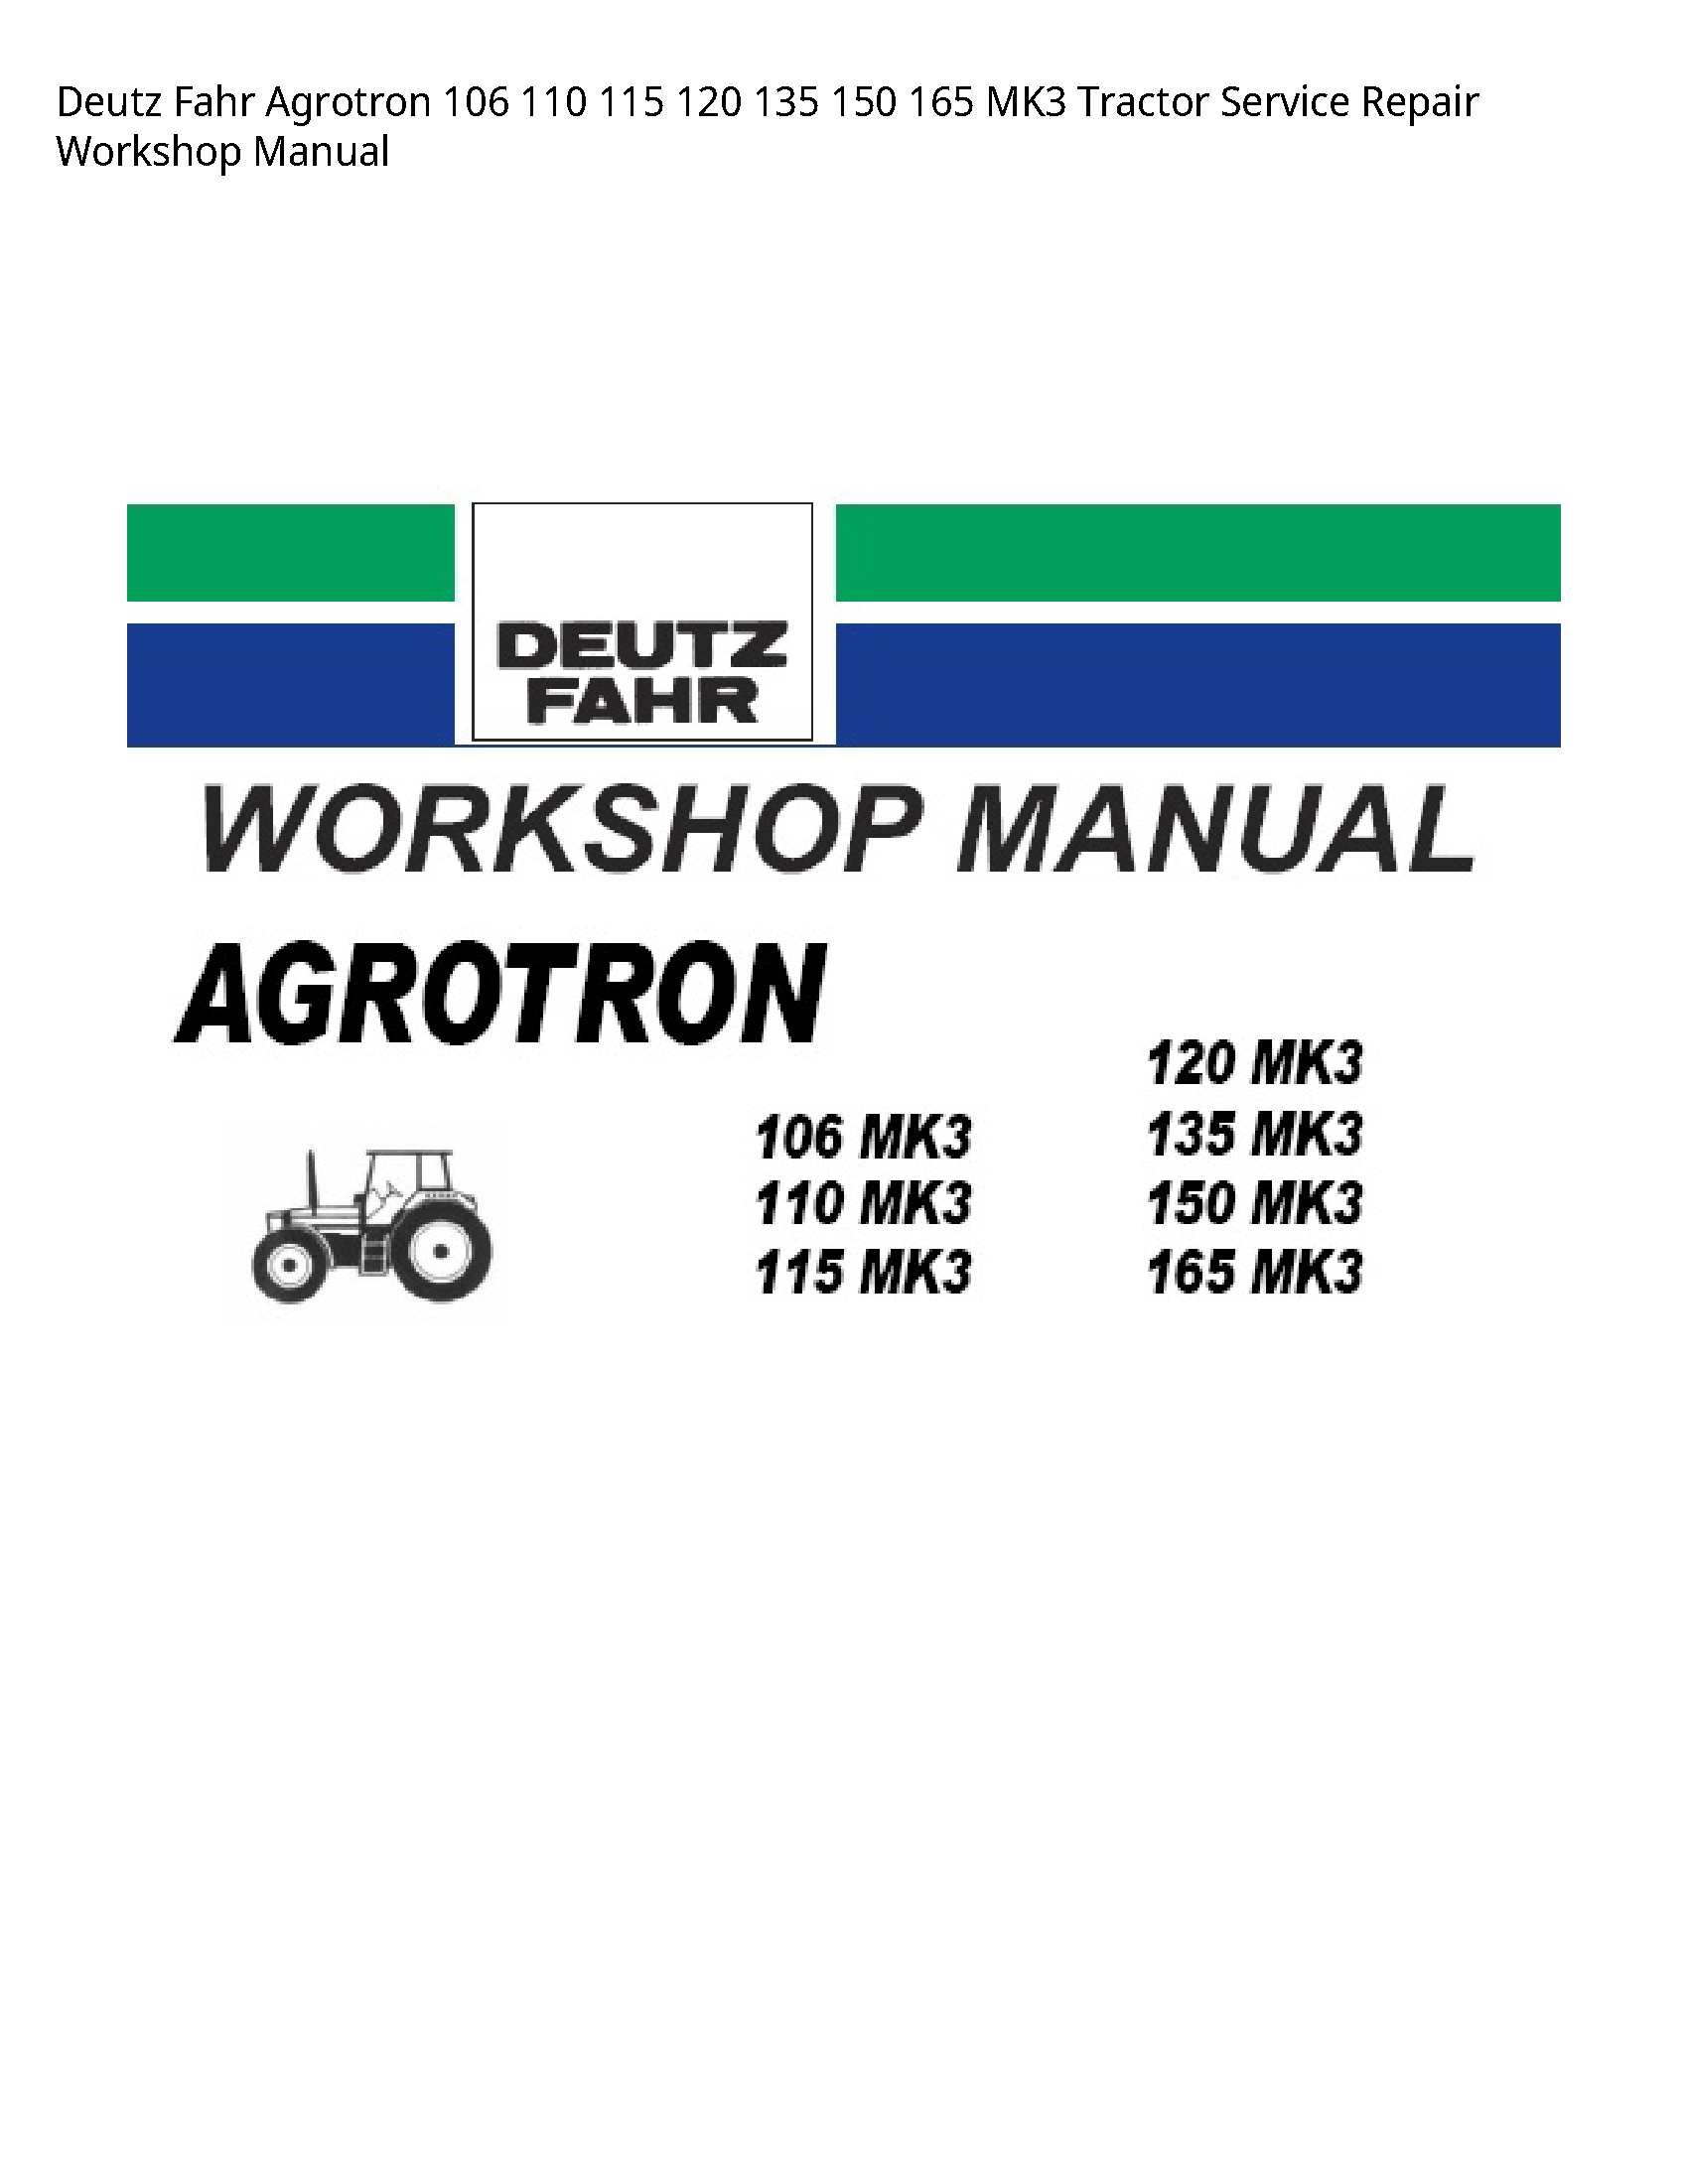 Deutz 106 Fahr Agrotron Tractor manual